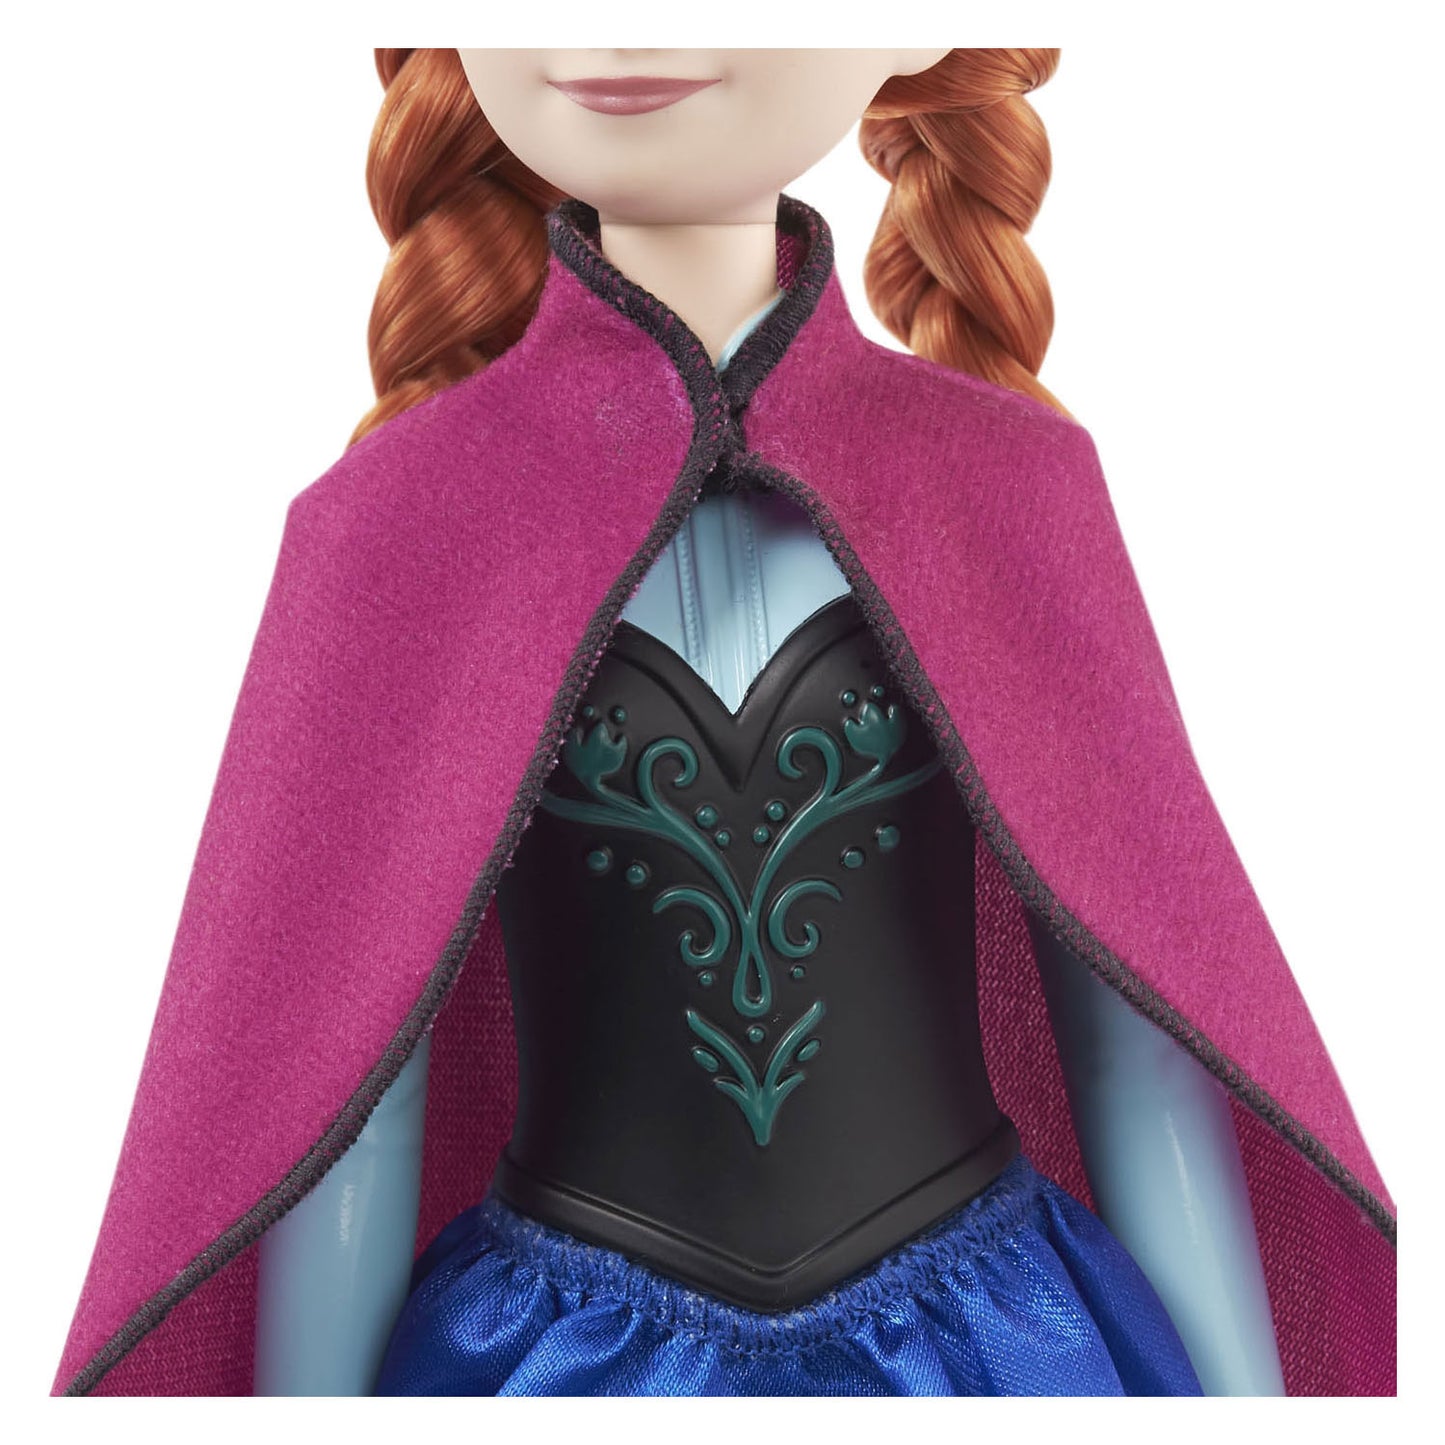 Disney Frozen Anna Pop